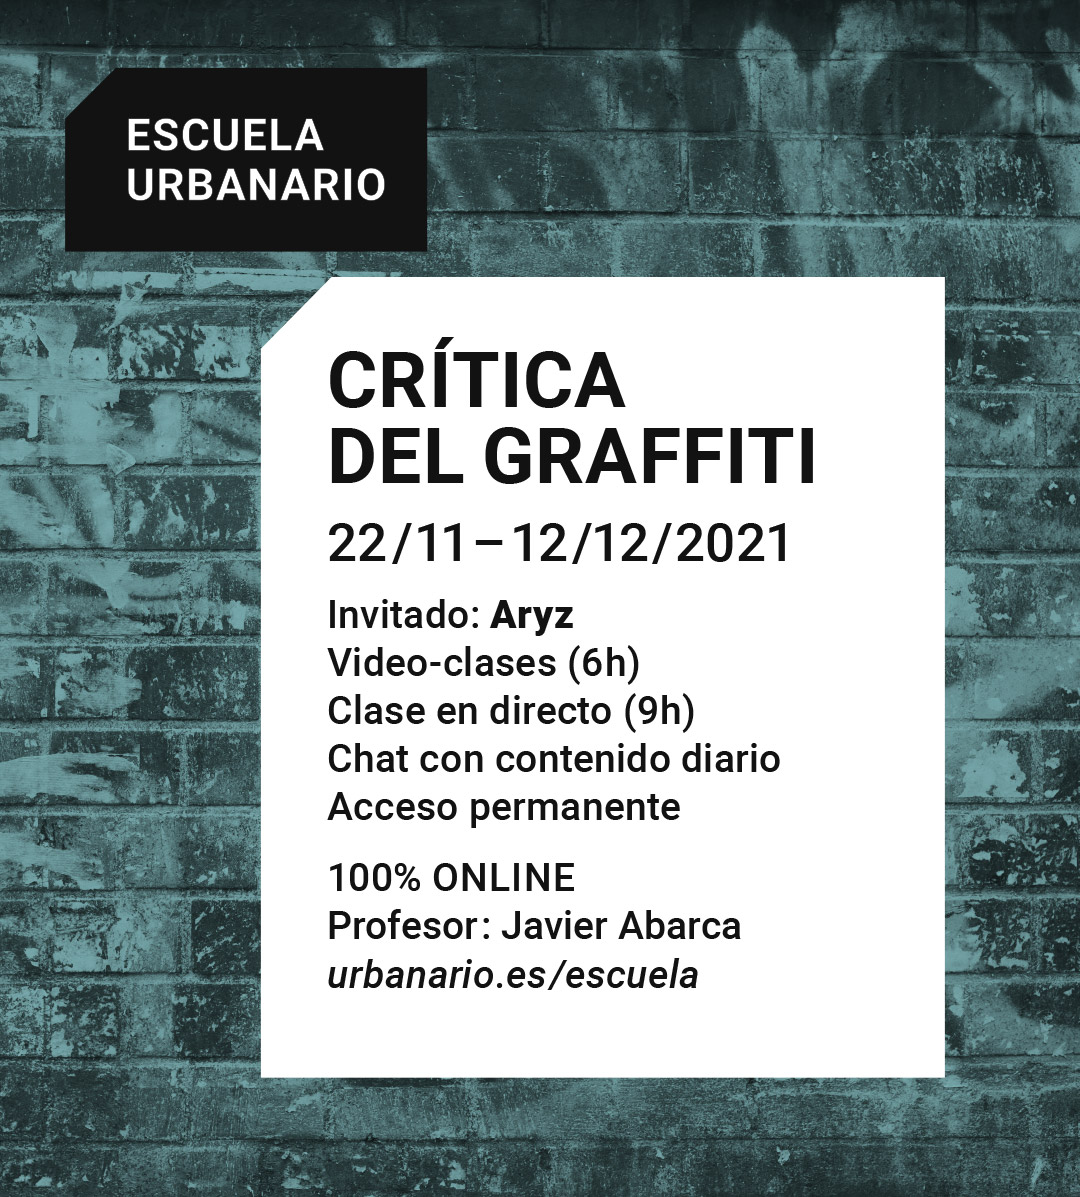 Crítica del graffiti - Escuela Urbanario